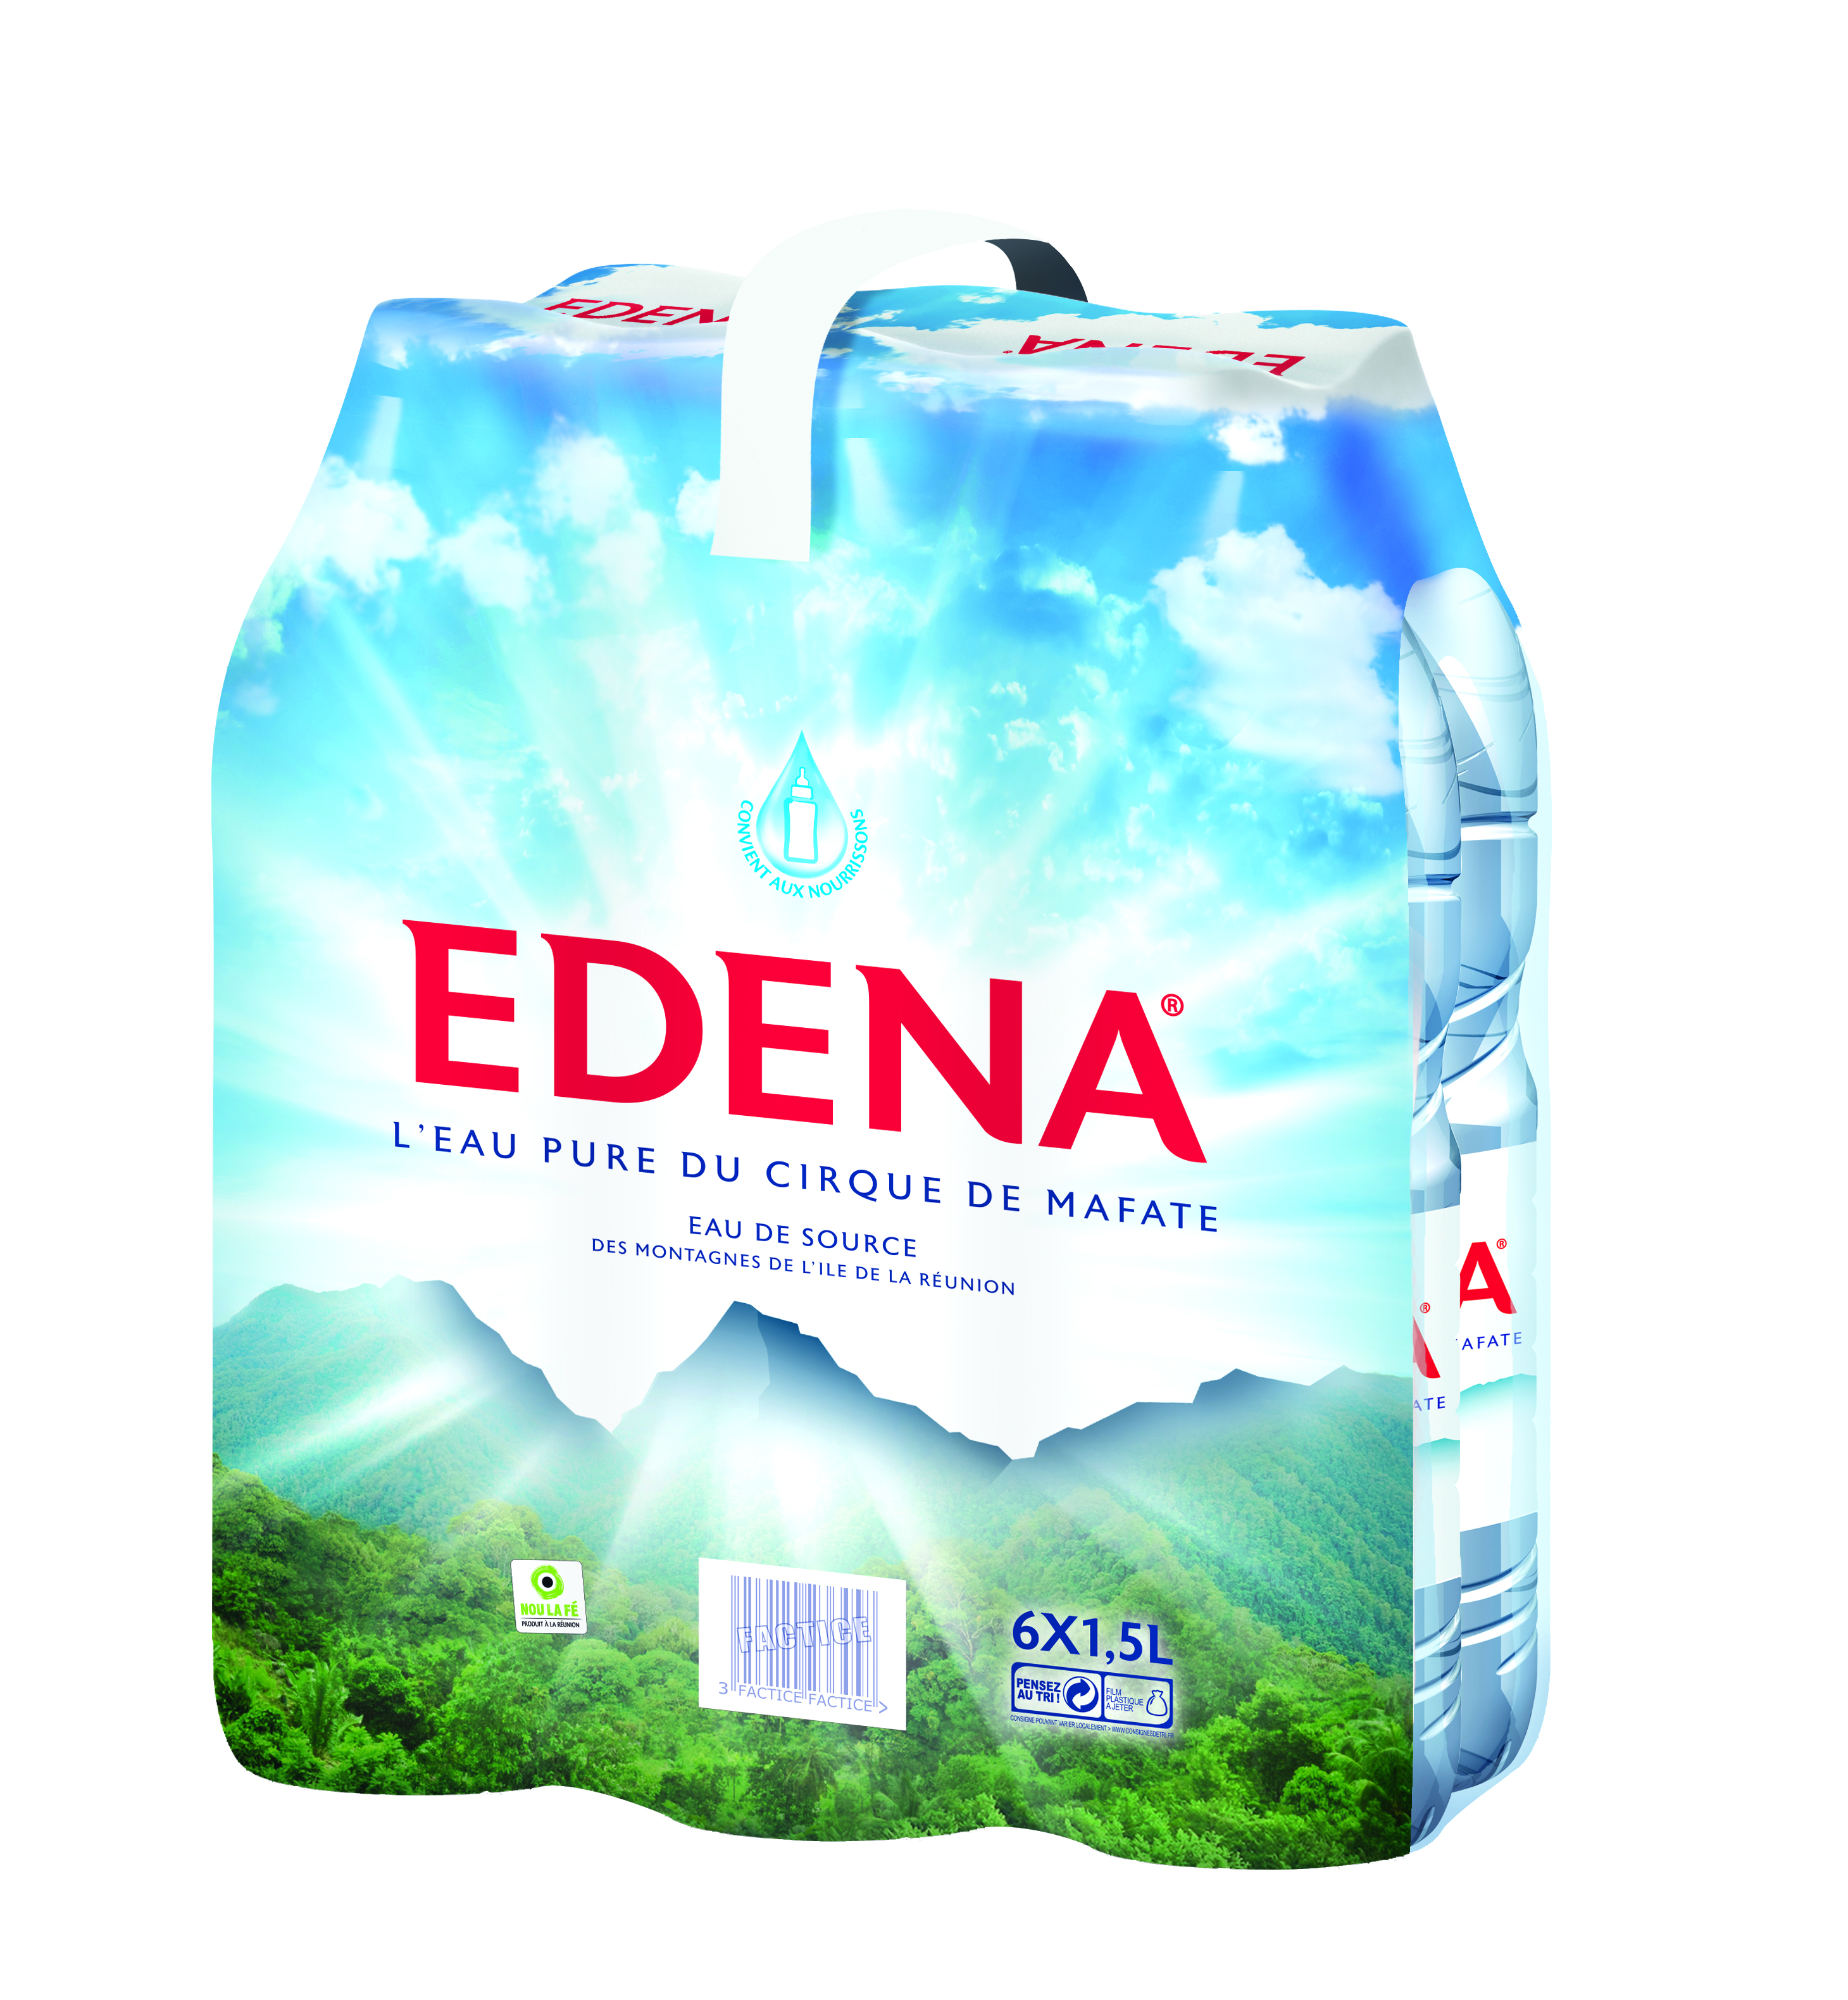 Réaction d'Edena sur les rumeurs de son rachat par la société Phoenix Beverages Limited